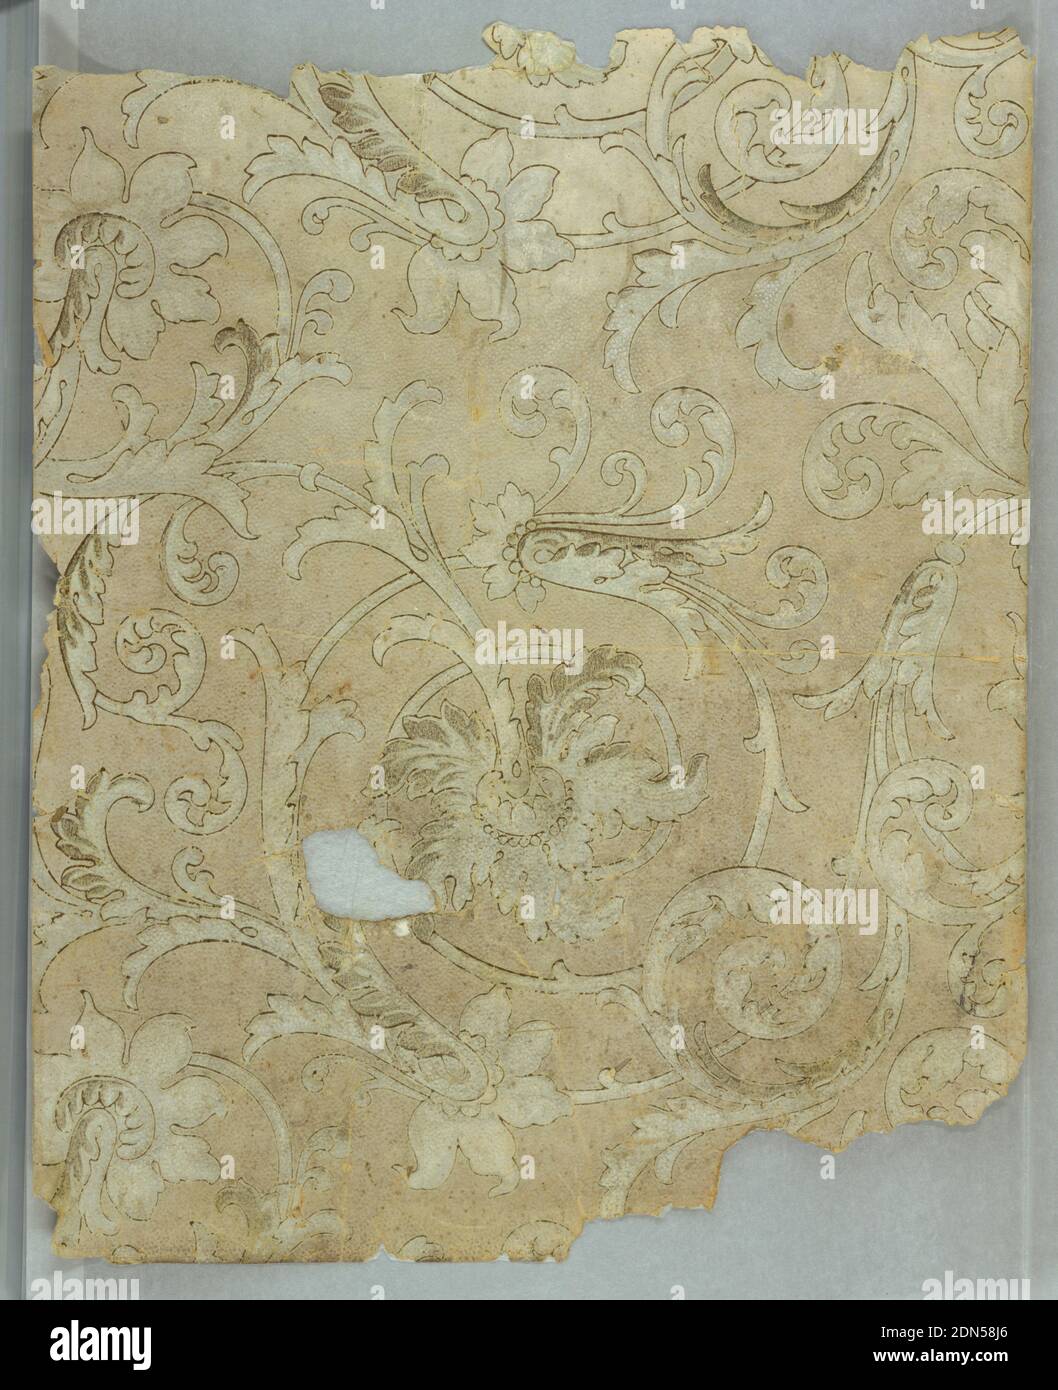 Flanc, feuille stylisée et fleur sur les nuances de beige et de gris, probablement à l'origine métallique., USA, 1850, revêtements muraux, flanc Banque D'Images